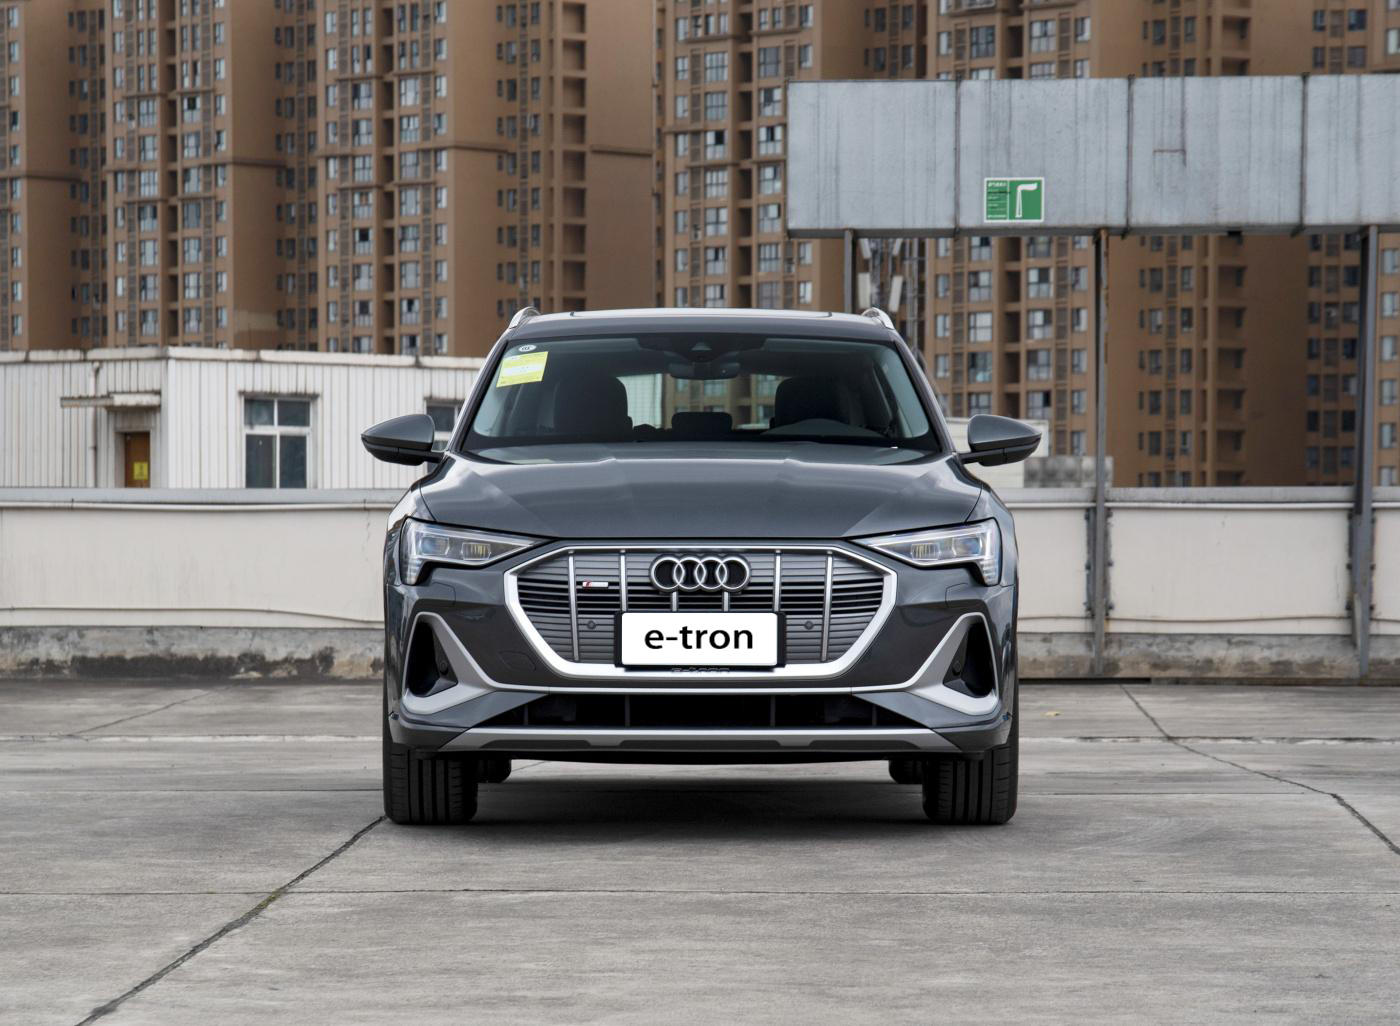 2021 Audi E-Tron Electric SUV Export Trade Supplier Company - Audi - 1